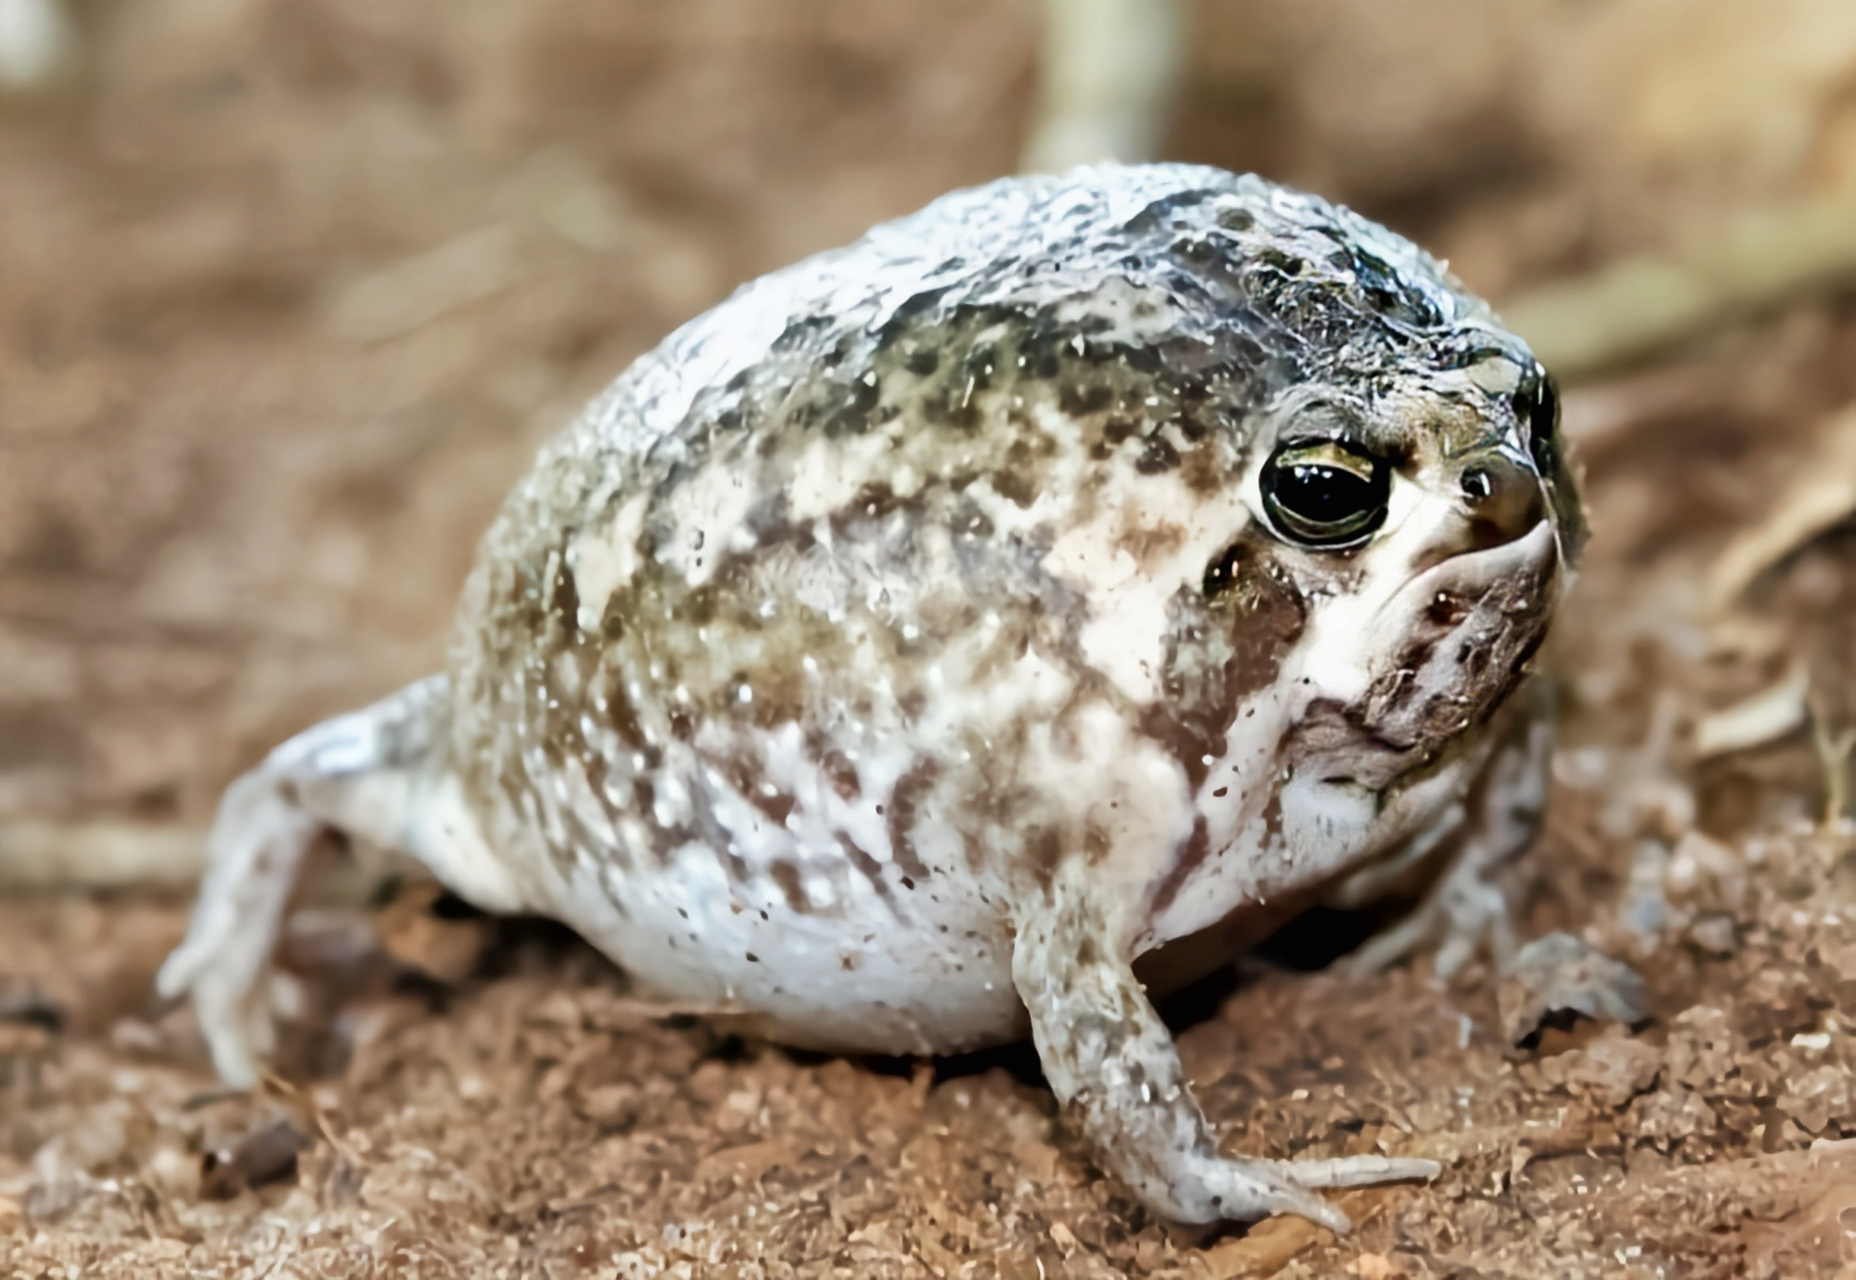 南非沙漠雨蛙别名馒头蛙,生活在非洲热带地区的土中,是一种掘地型蛙类